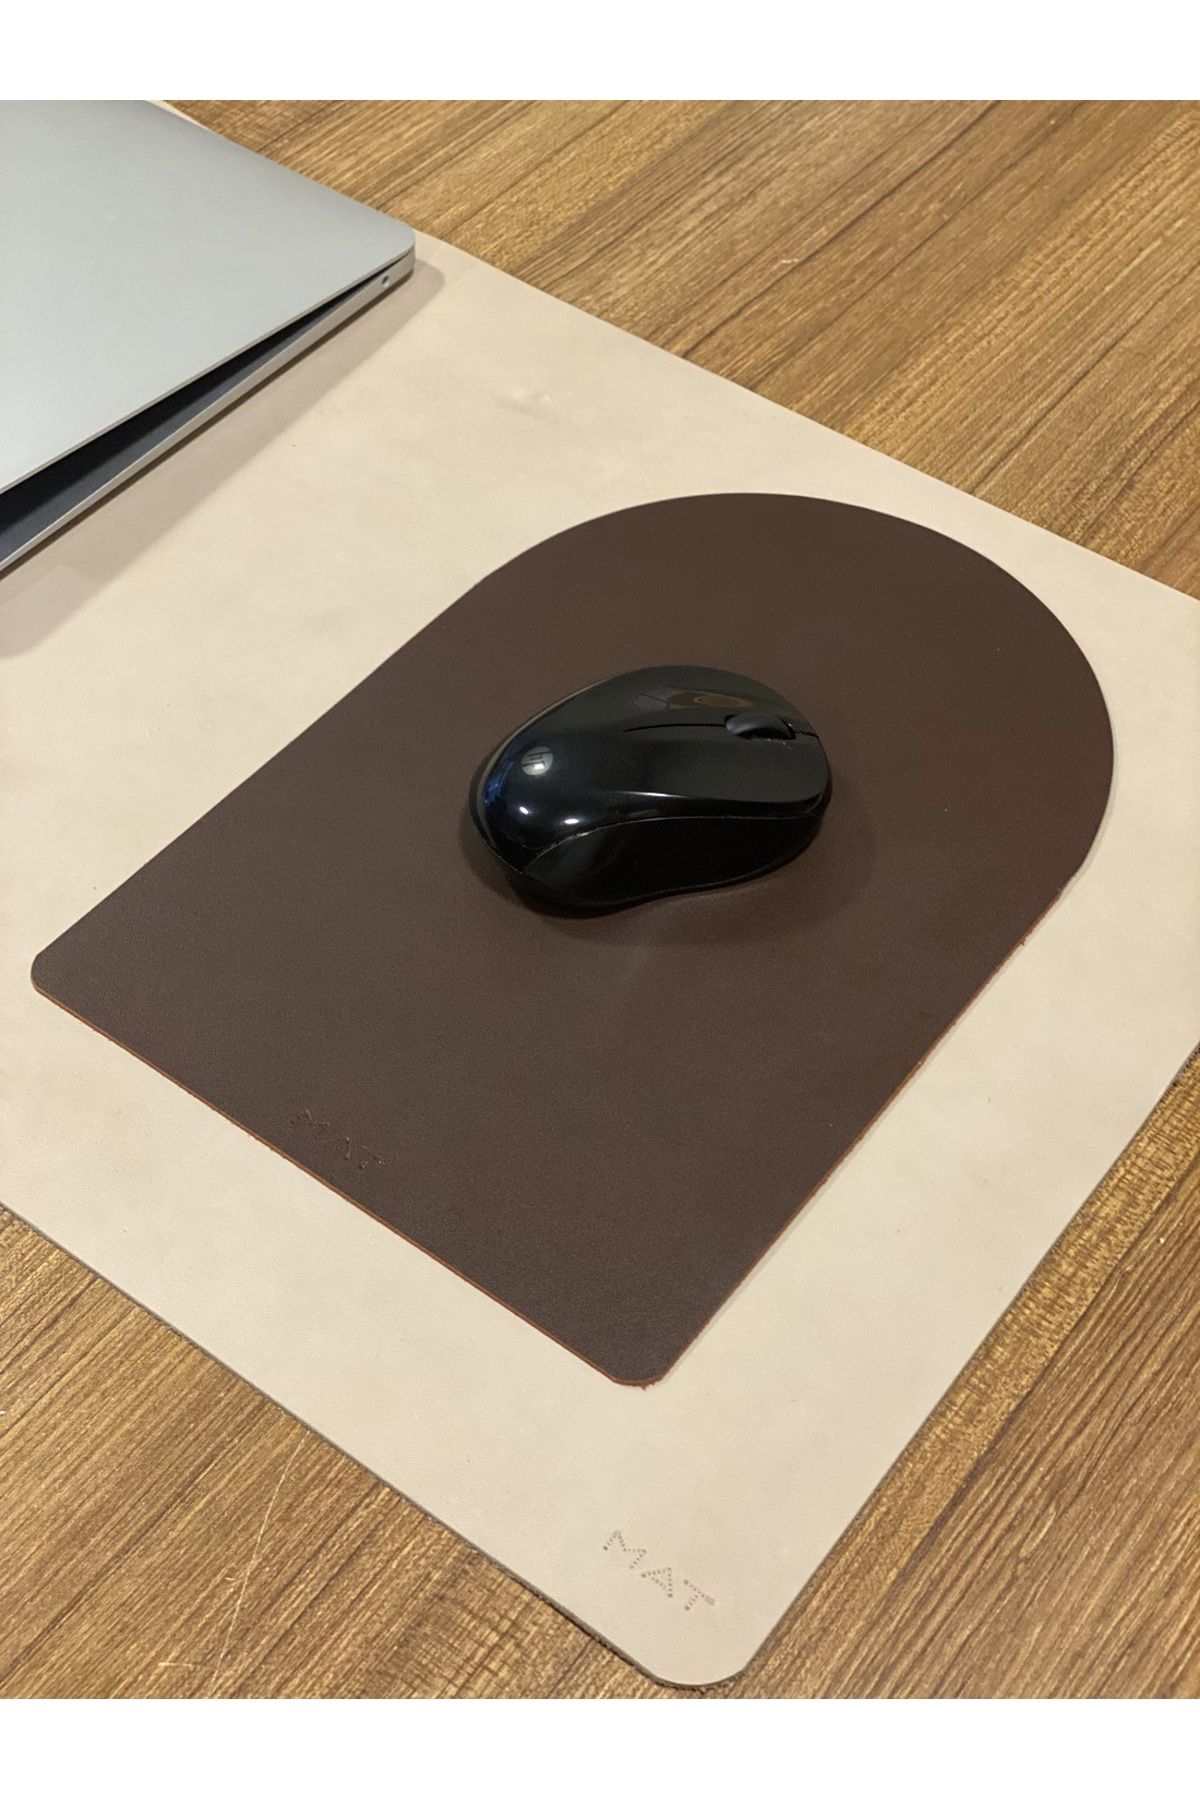 MAT Deri Mousepad Hakiki Deri El Yapımı Özel Tasarım Oyuncu Mousepad 28x19 cm